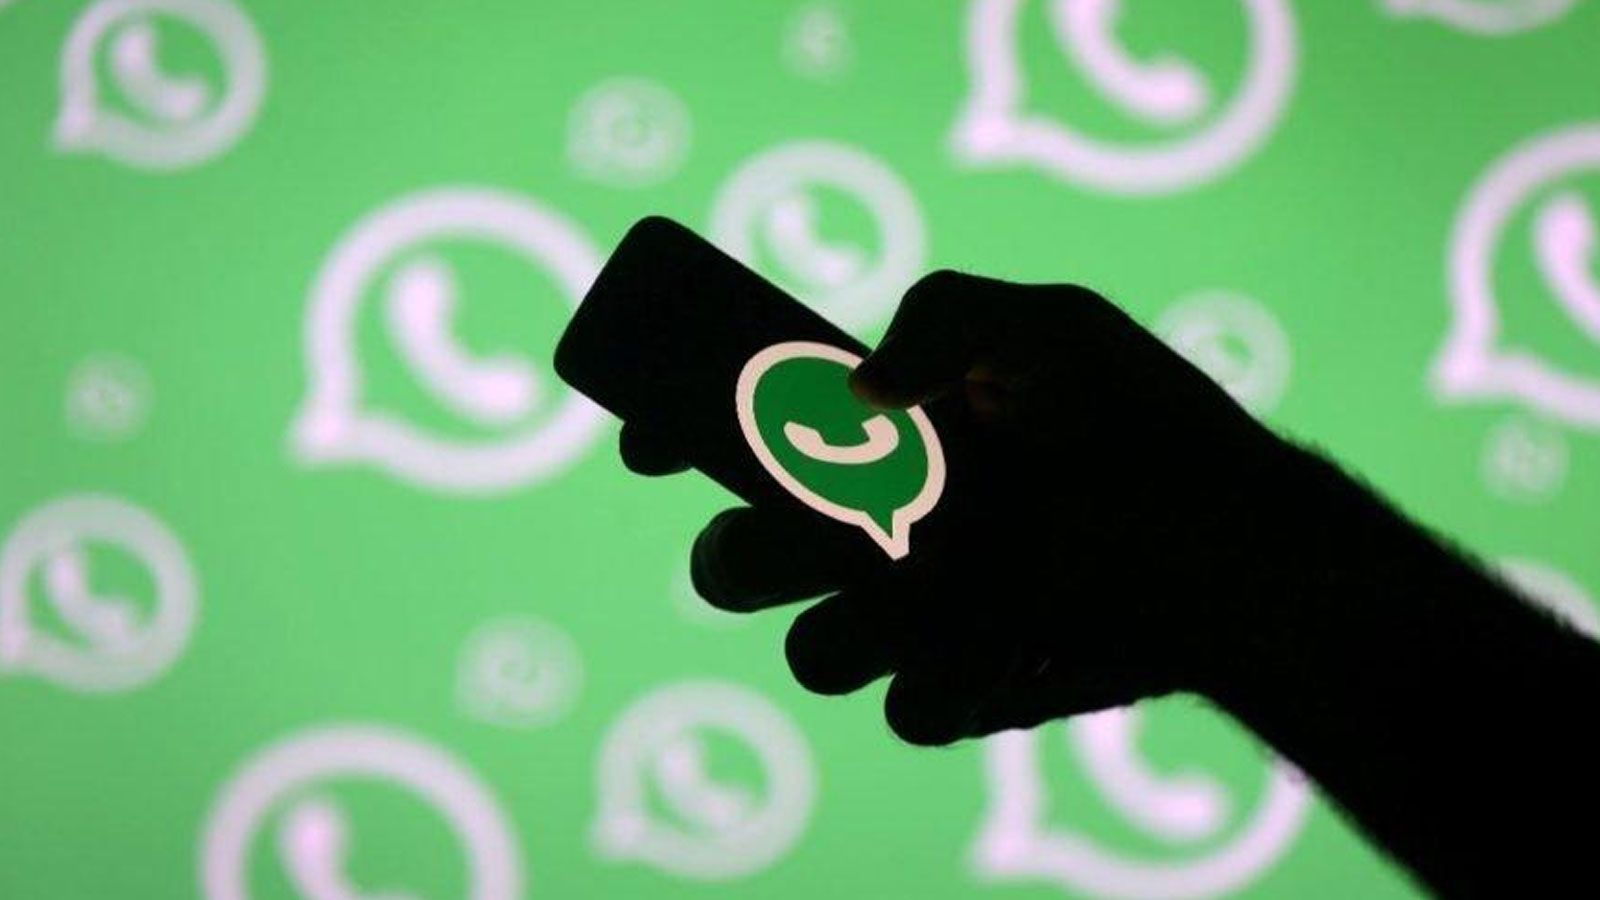 WhatsApp kullananlar dikkat: 'Gizli ücret' uyarısı geldi, işte yapmanız gerekenler